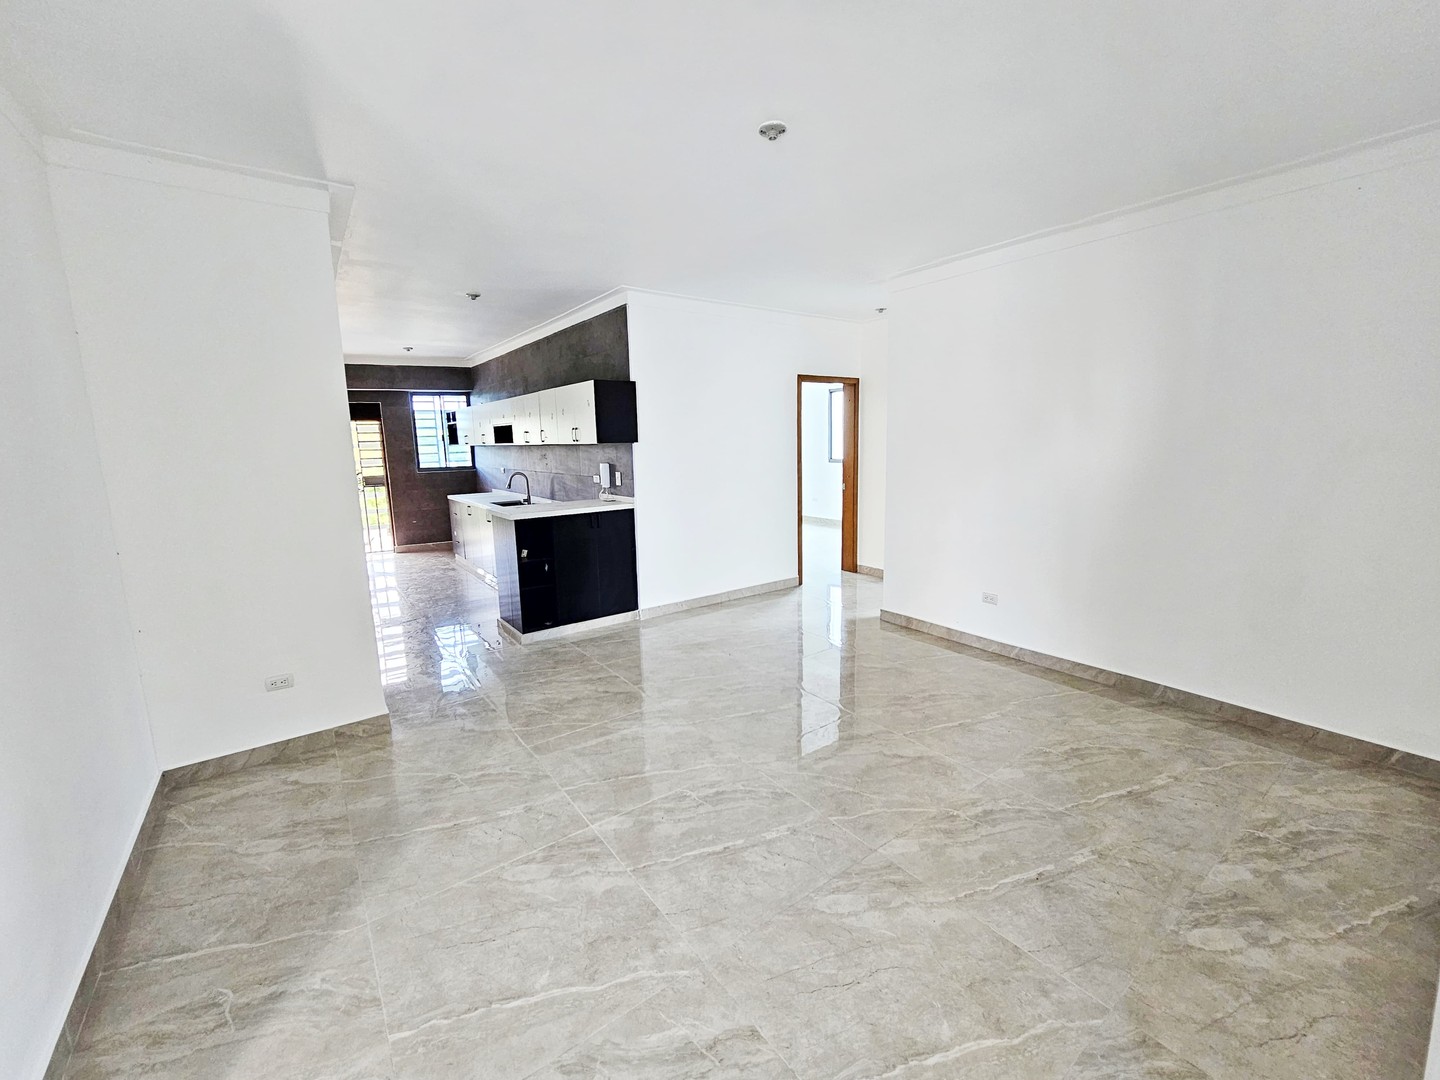 apartamentos - Apartamento NUEVO en Ensanche Paraíso.

Precio:RD$10,000,000.

- 136mt2 en total 2